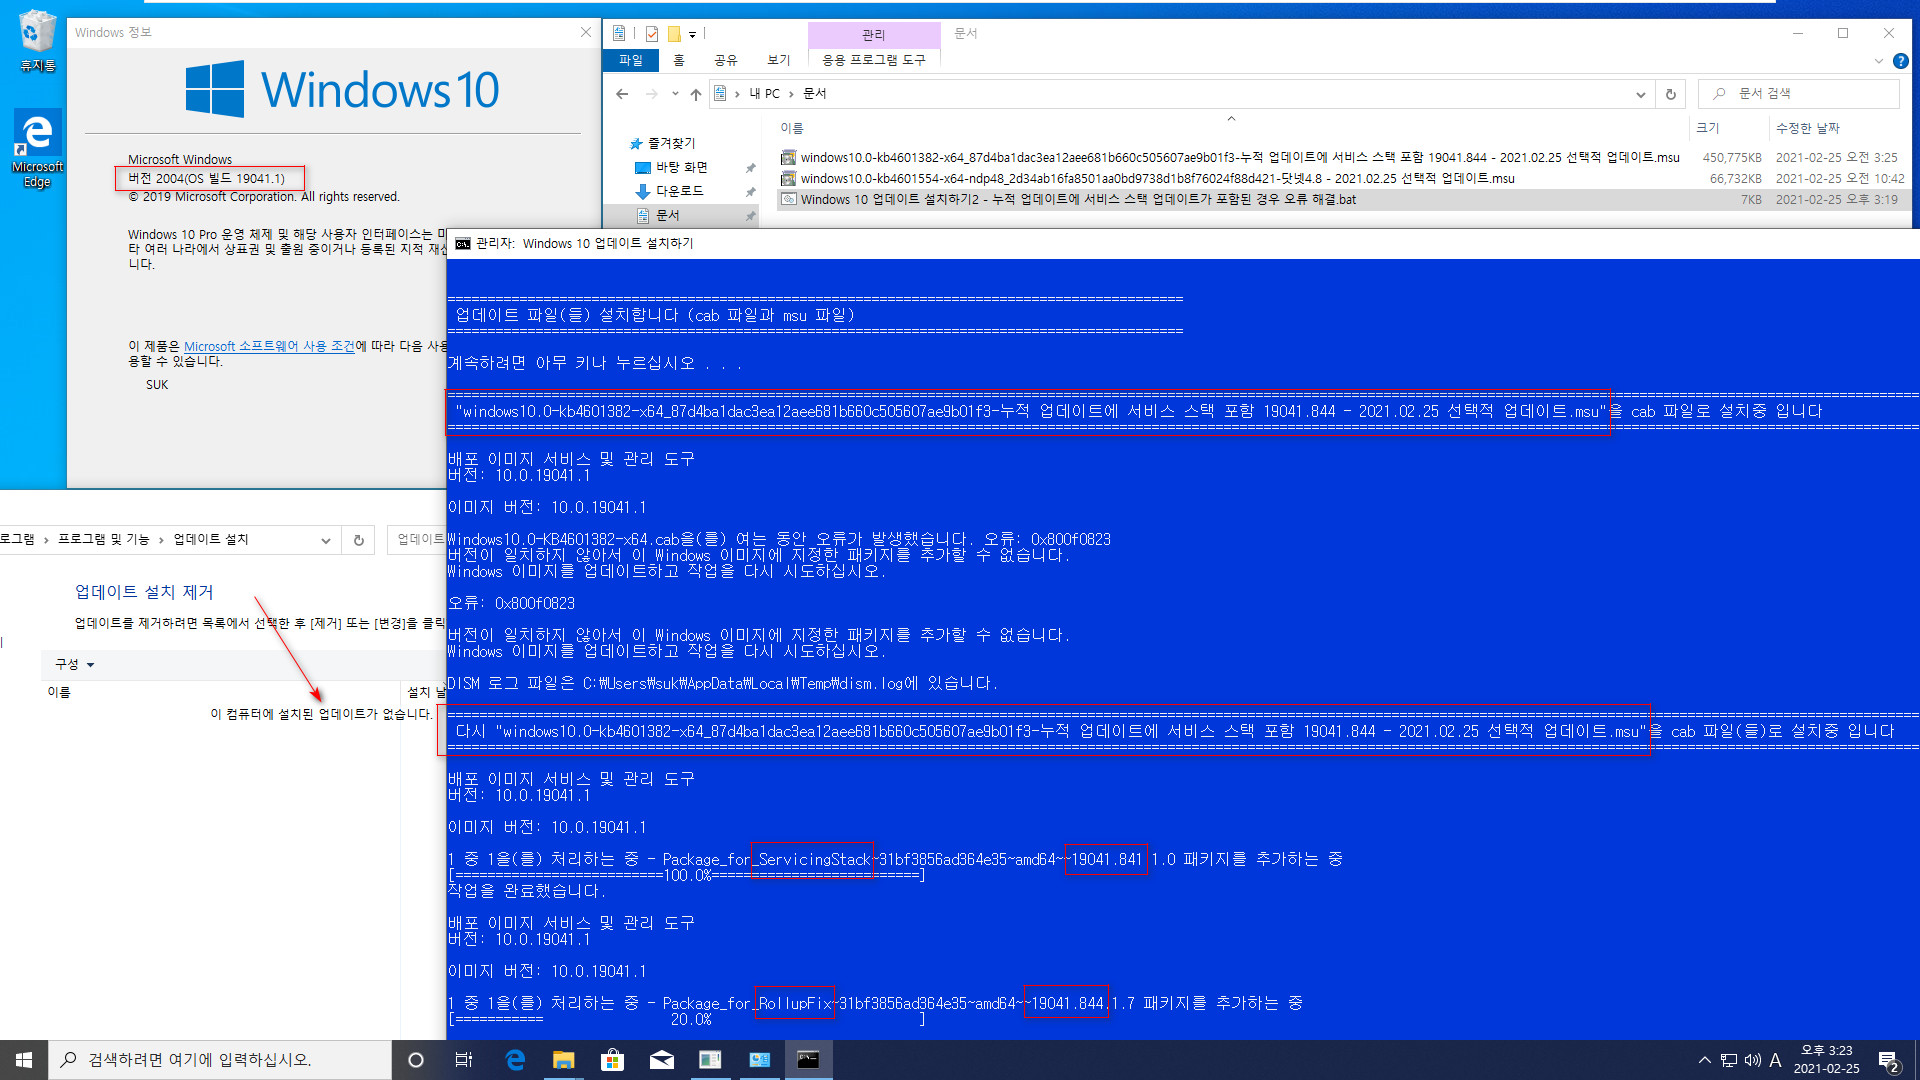 2021.02.25 선택적 업데이트 KB4601382 (OS 빌드 19041.844) 부터 msu 파일 안에 서비스 스택 업데이트가 포함되어 있는데요. Windows 10 업데이트 설치하기2.bat로 수정했습니다 2021-02-25_152314.jpg